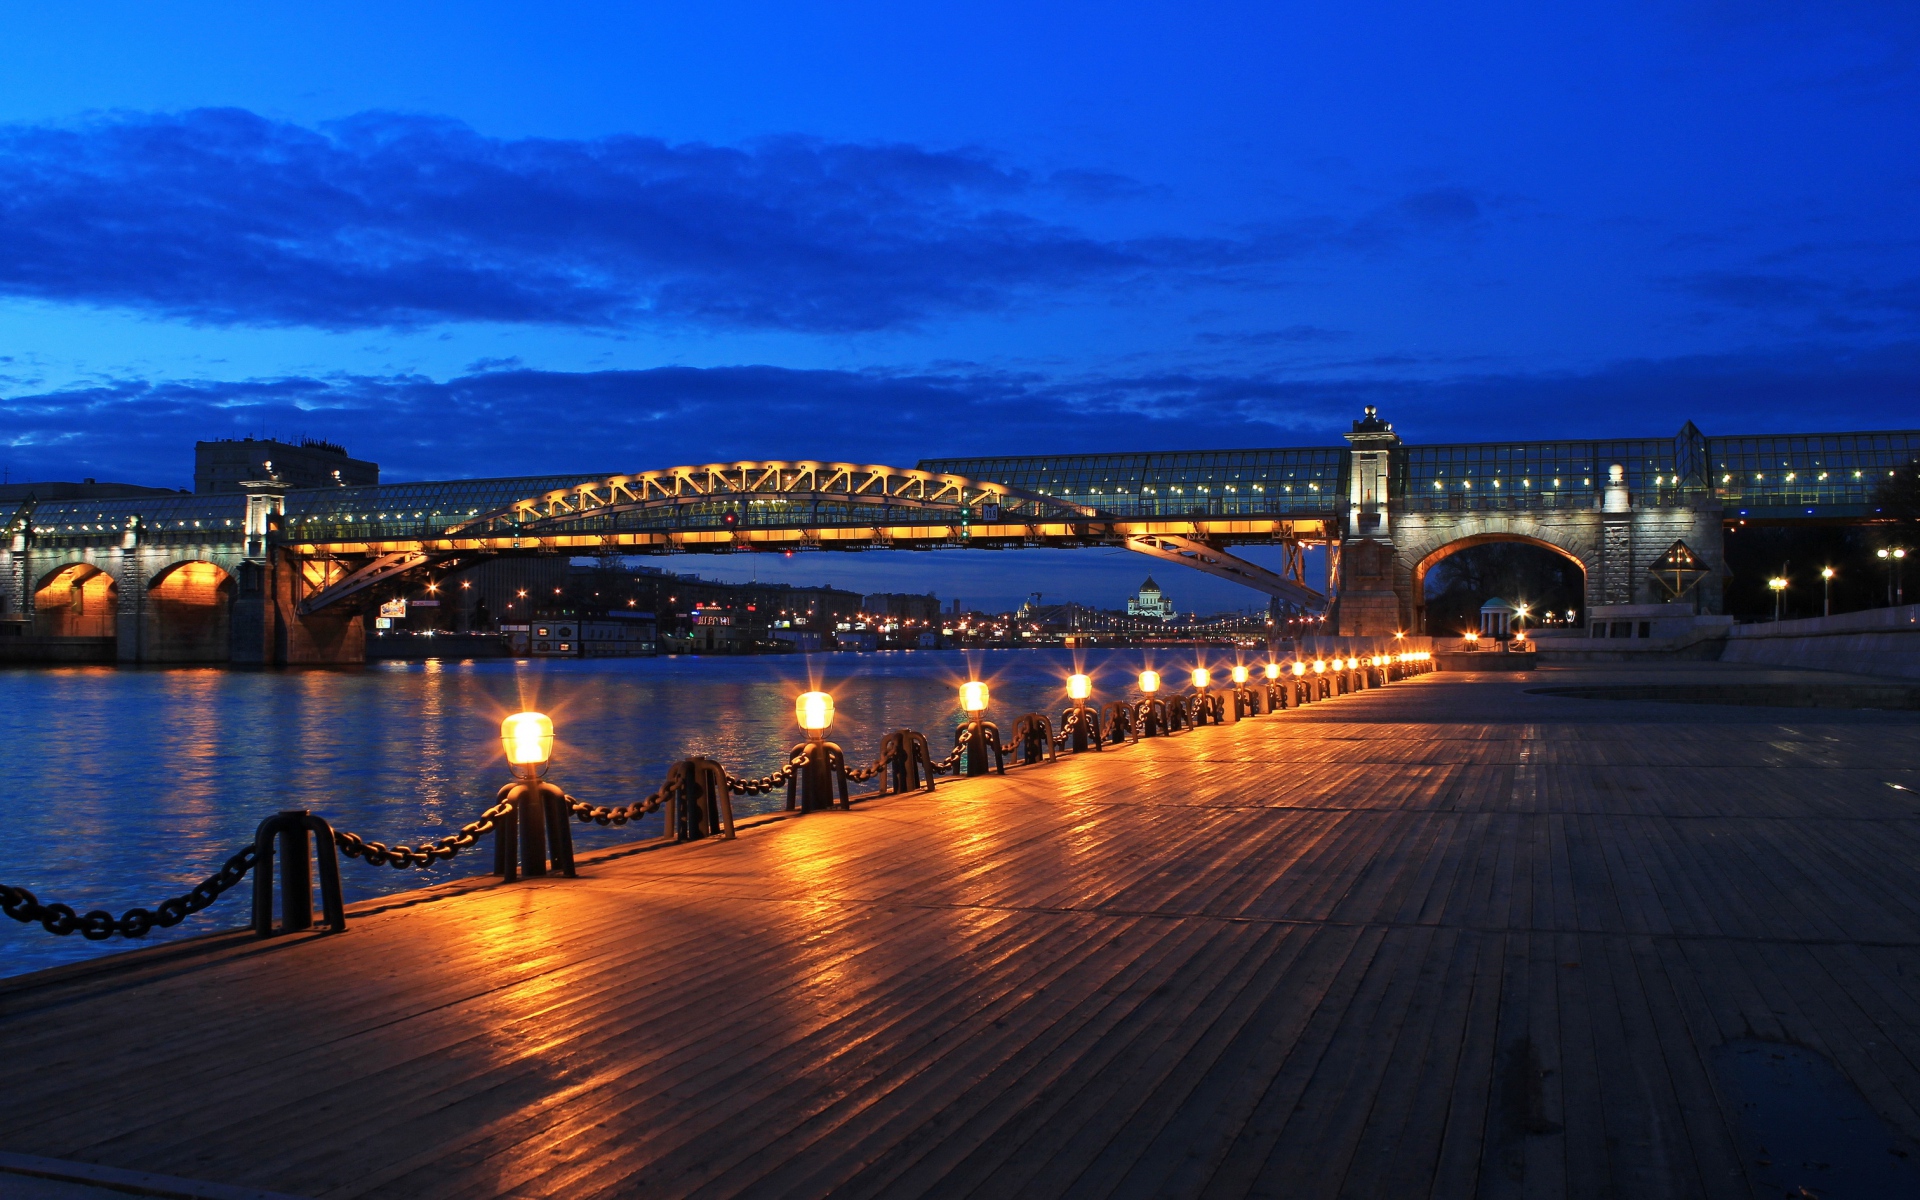 Картинки Москва, мост, набережная Пушкина, ночь фото и обои на рабочий стол